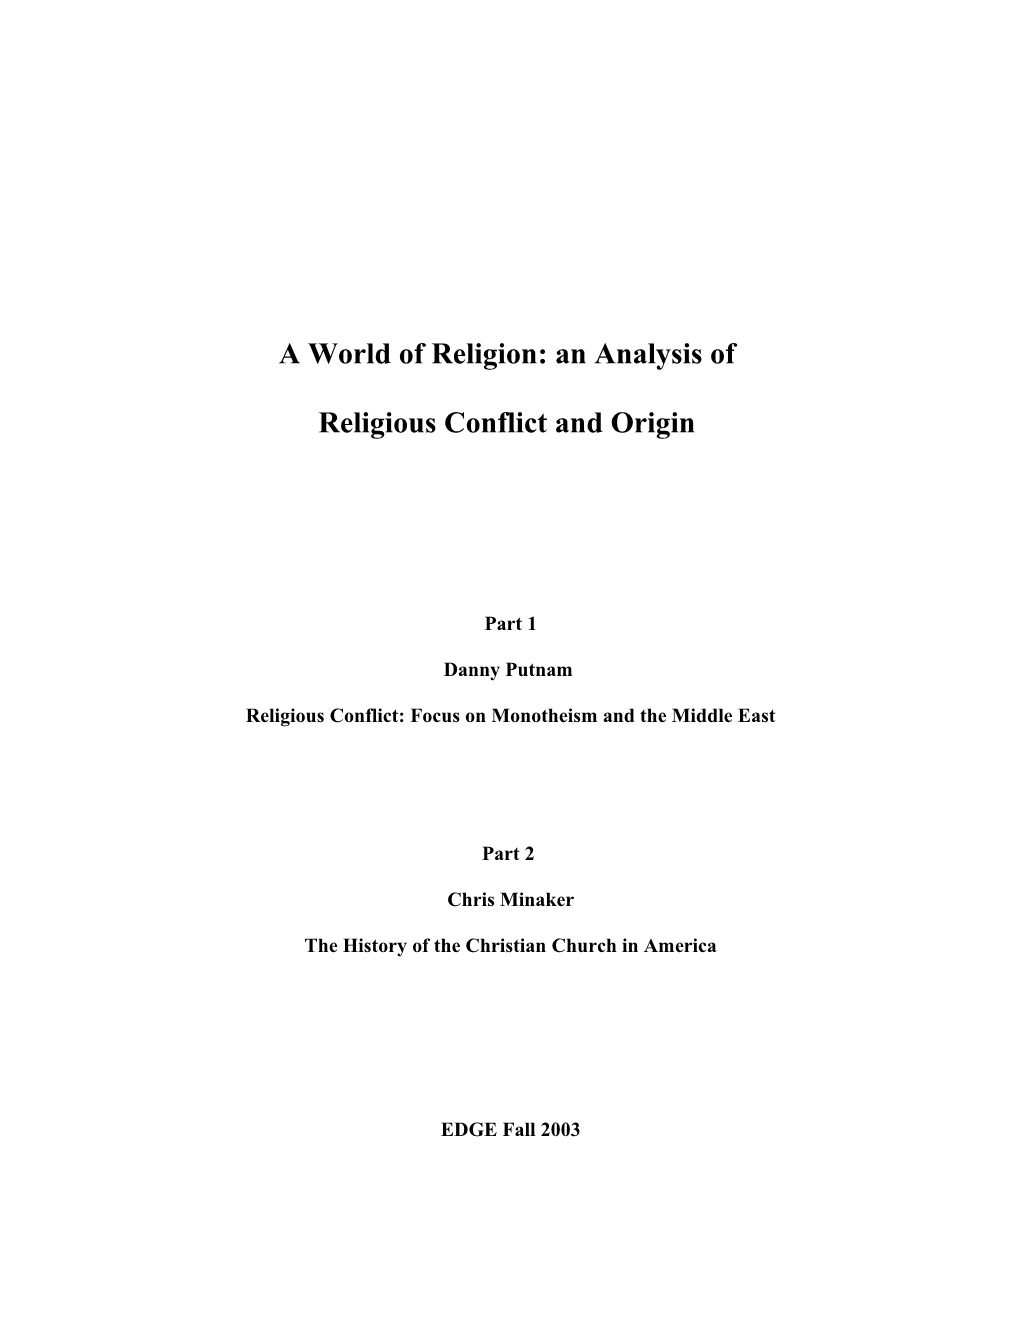 Religious Conflict and Origin